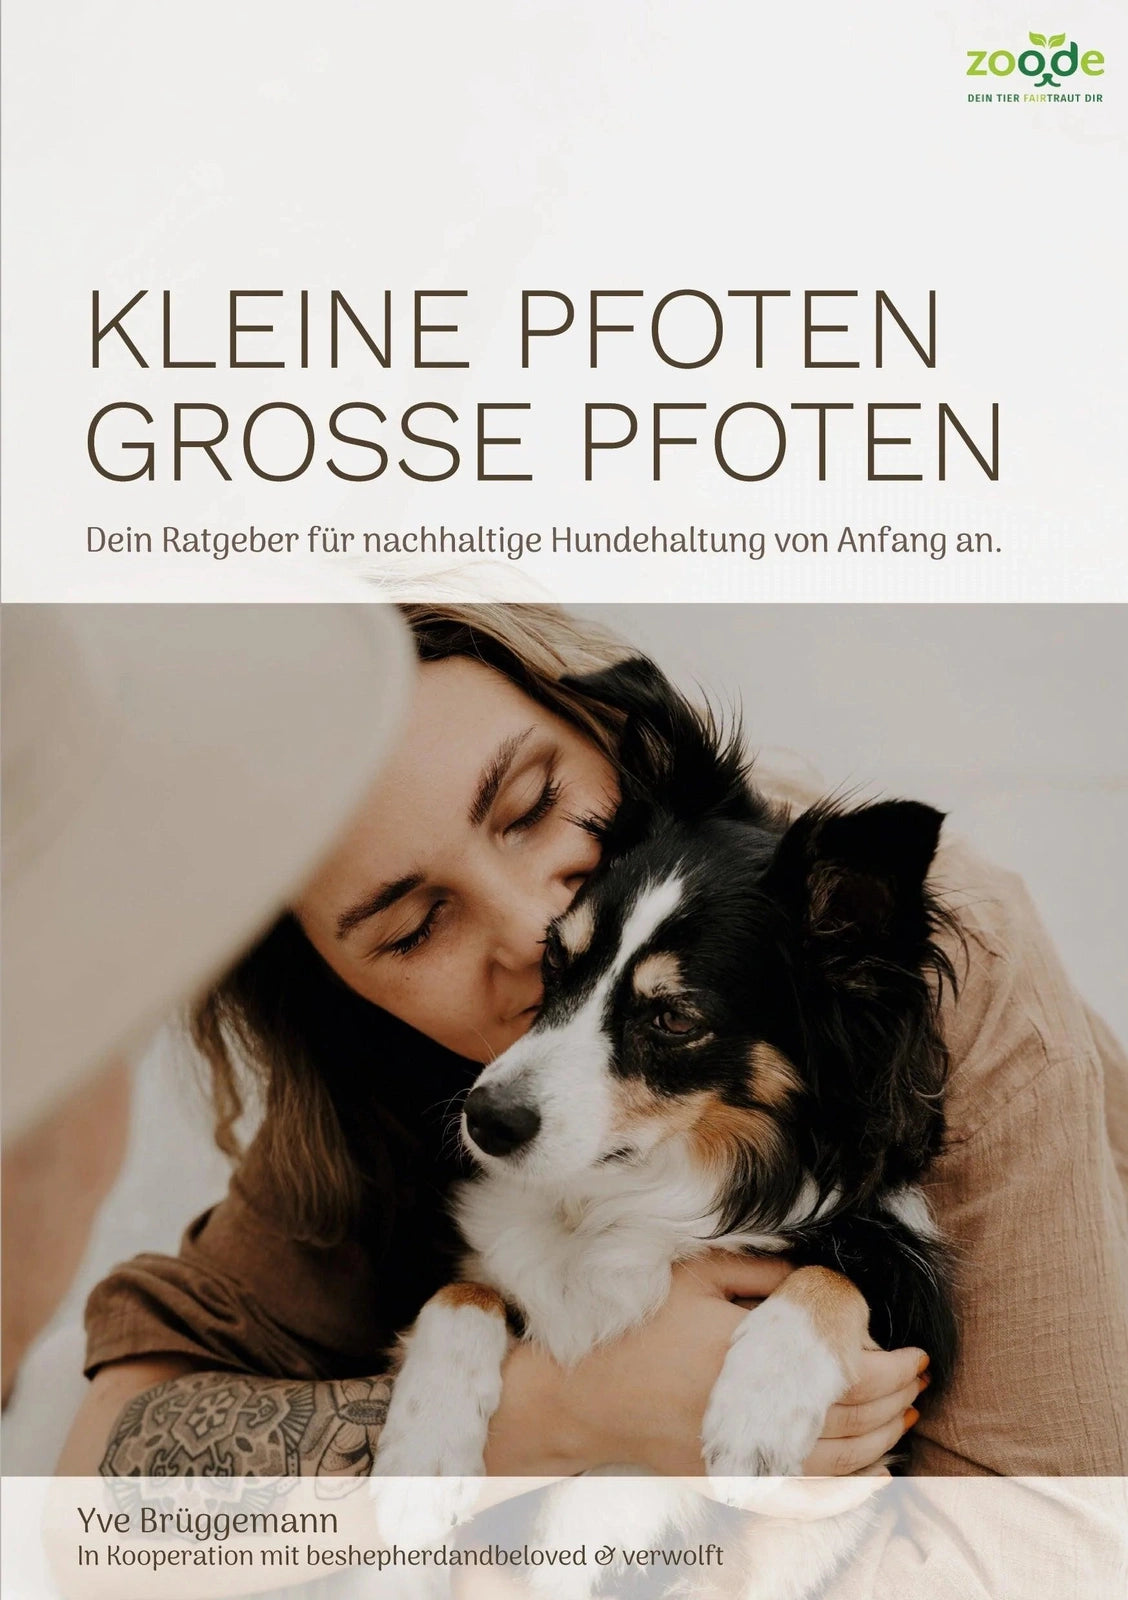 Artikel mit dem Namen Kleine Pfoten, Große Pfoten - Hunderatgeber (eBook) im Shop von zoo.de , dem Onlineshop für nachhaltiges Hundefutter und Katzenfutter.